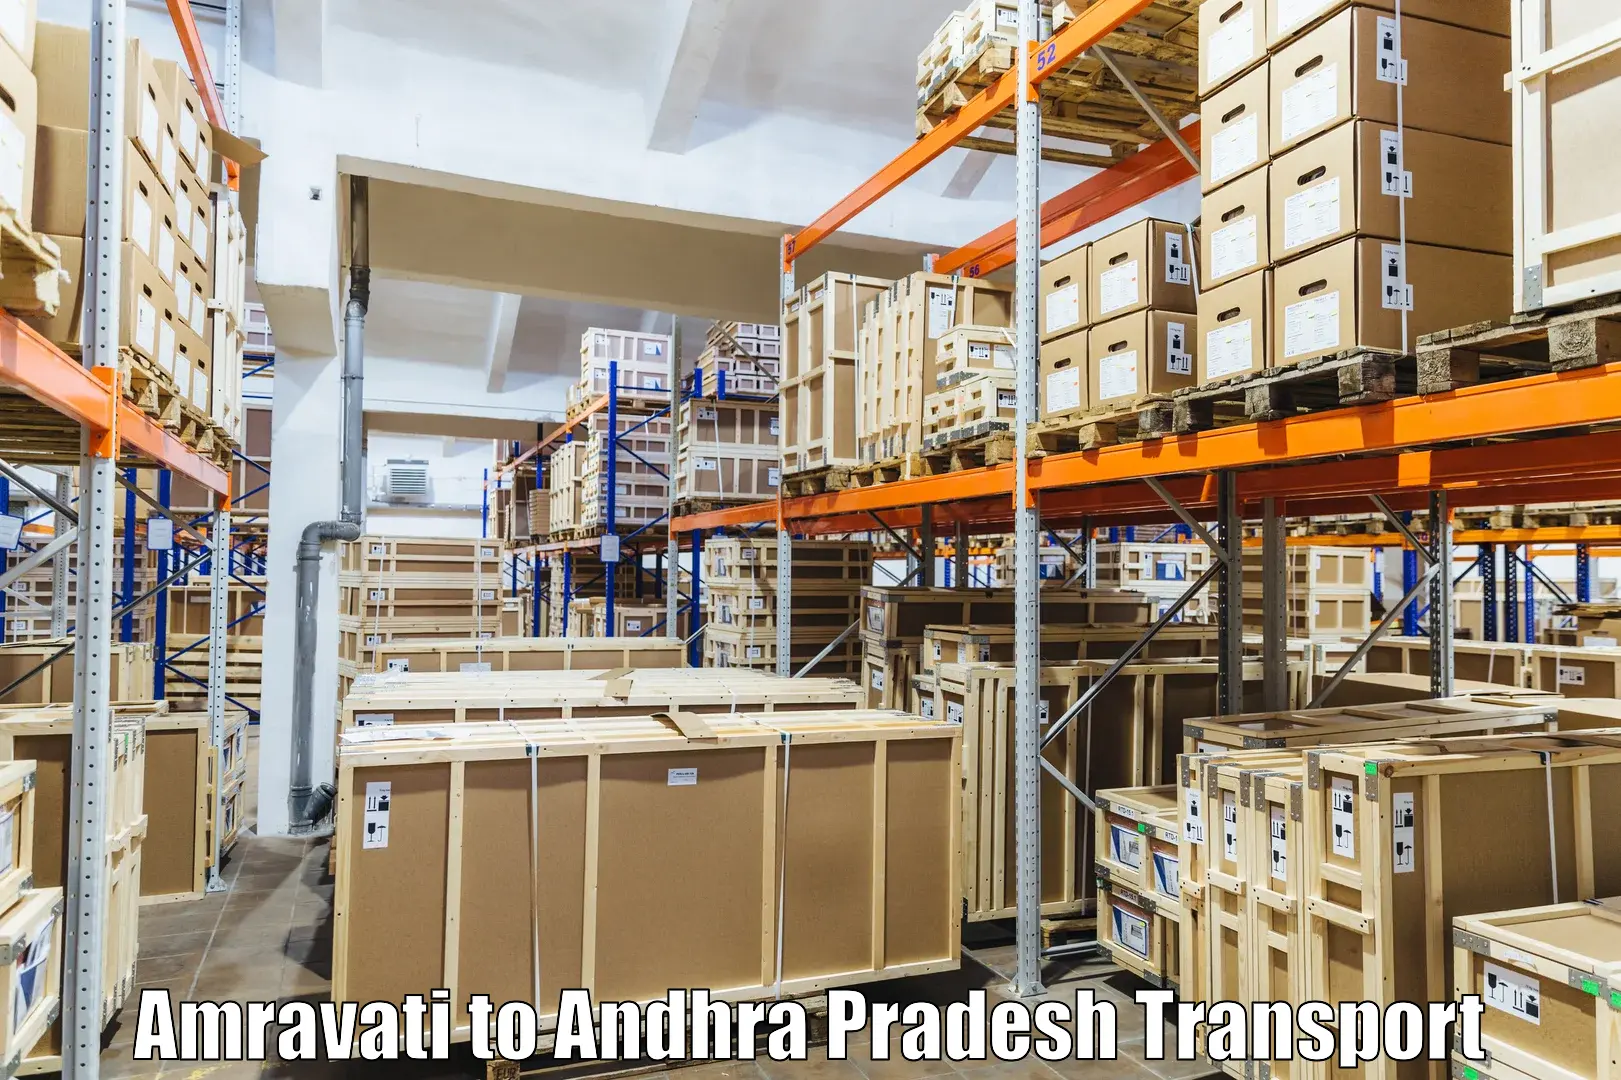 Commercial transport service in Amravati to Narsipatnam